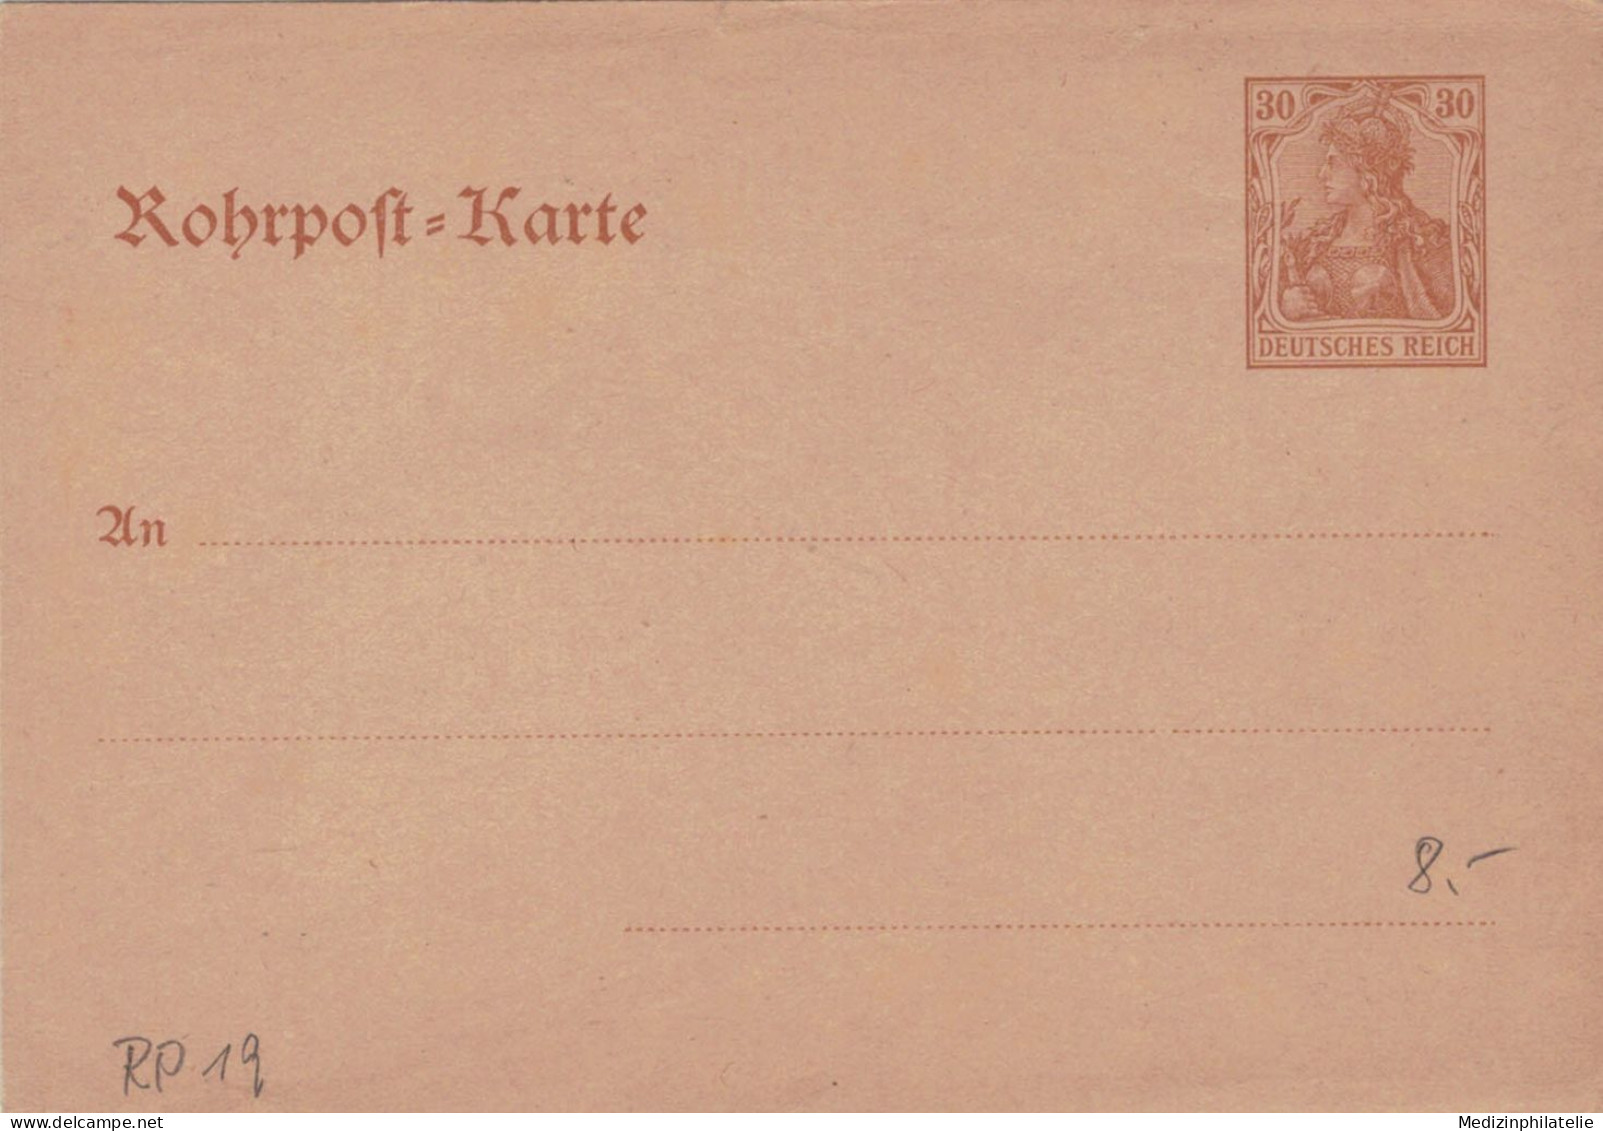 Rohrpost-Karte 30 Pf. Germania - Ungebraucht - 19 - Cartes Postales